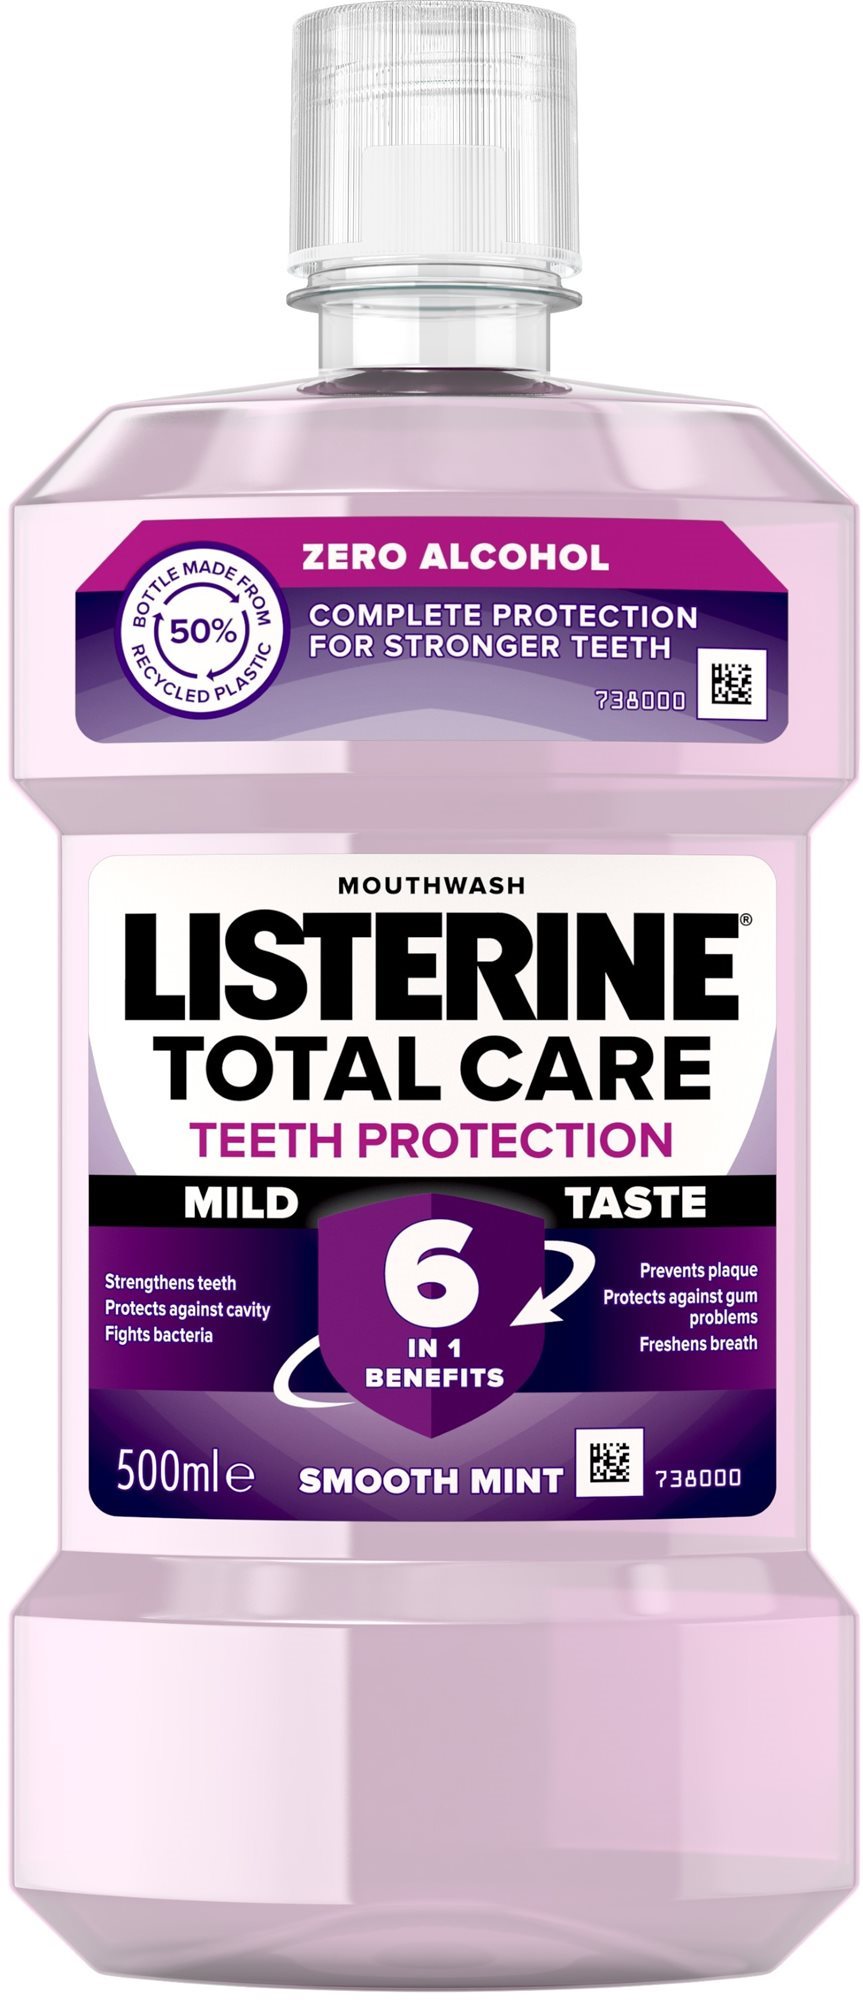 Listerine Total Care Teeth Protection Mild Taste 500ml